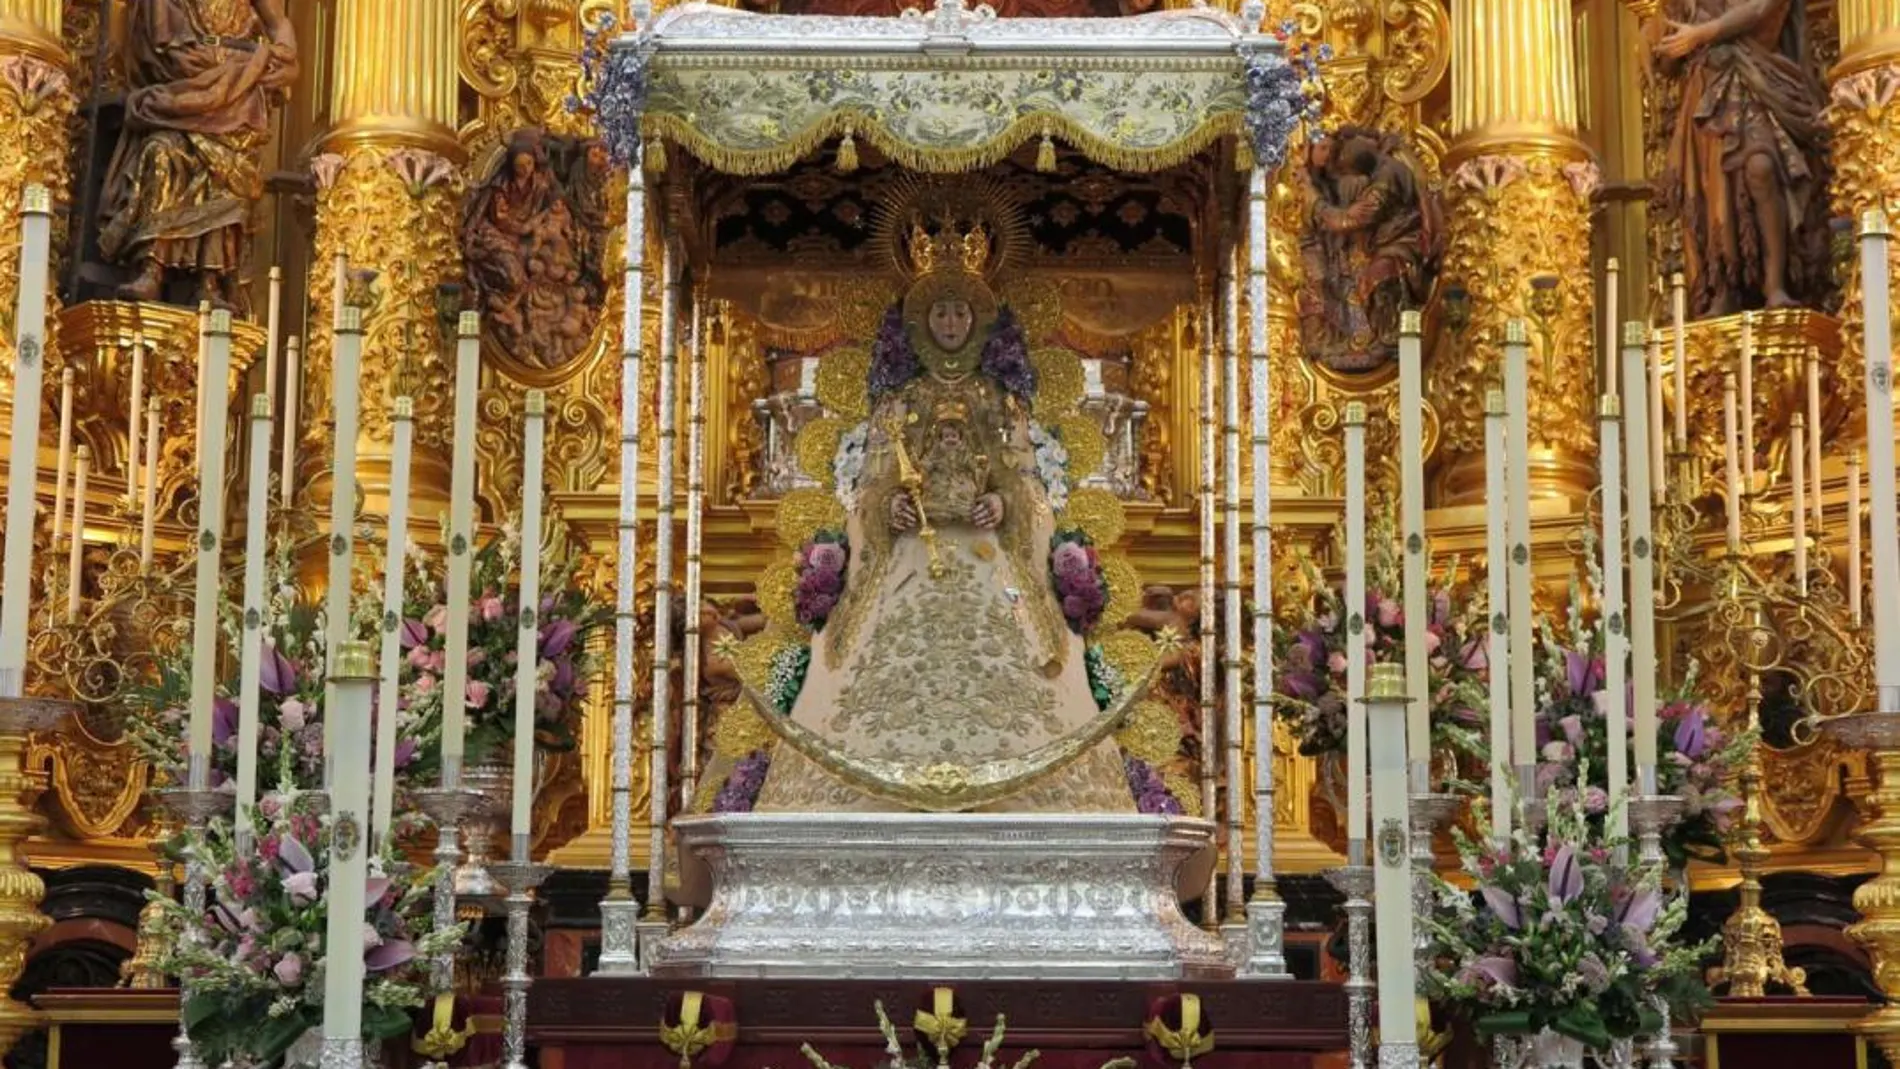 La Virgen luce el traje de los Montpensier, la corona de la coronación, el rostrillo de Muñoz y Pabón y las ráfagas de punta de martillo o redondas